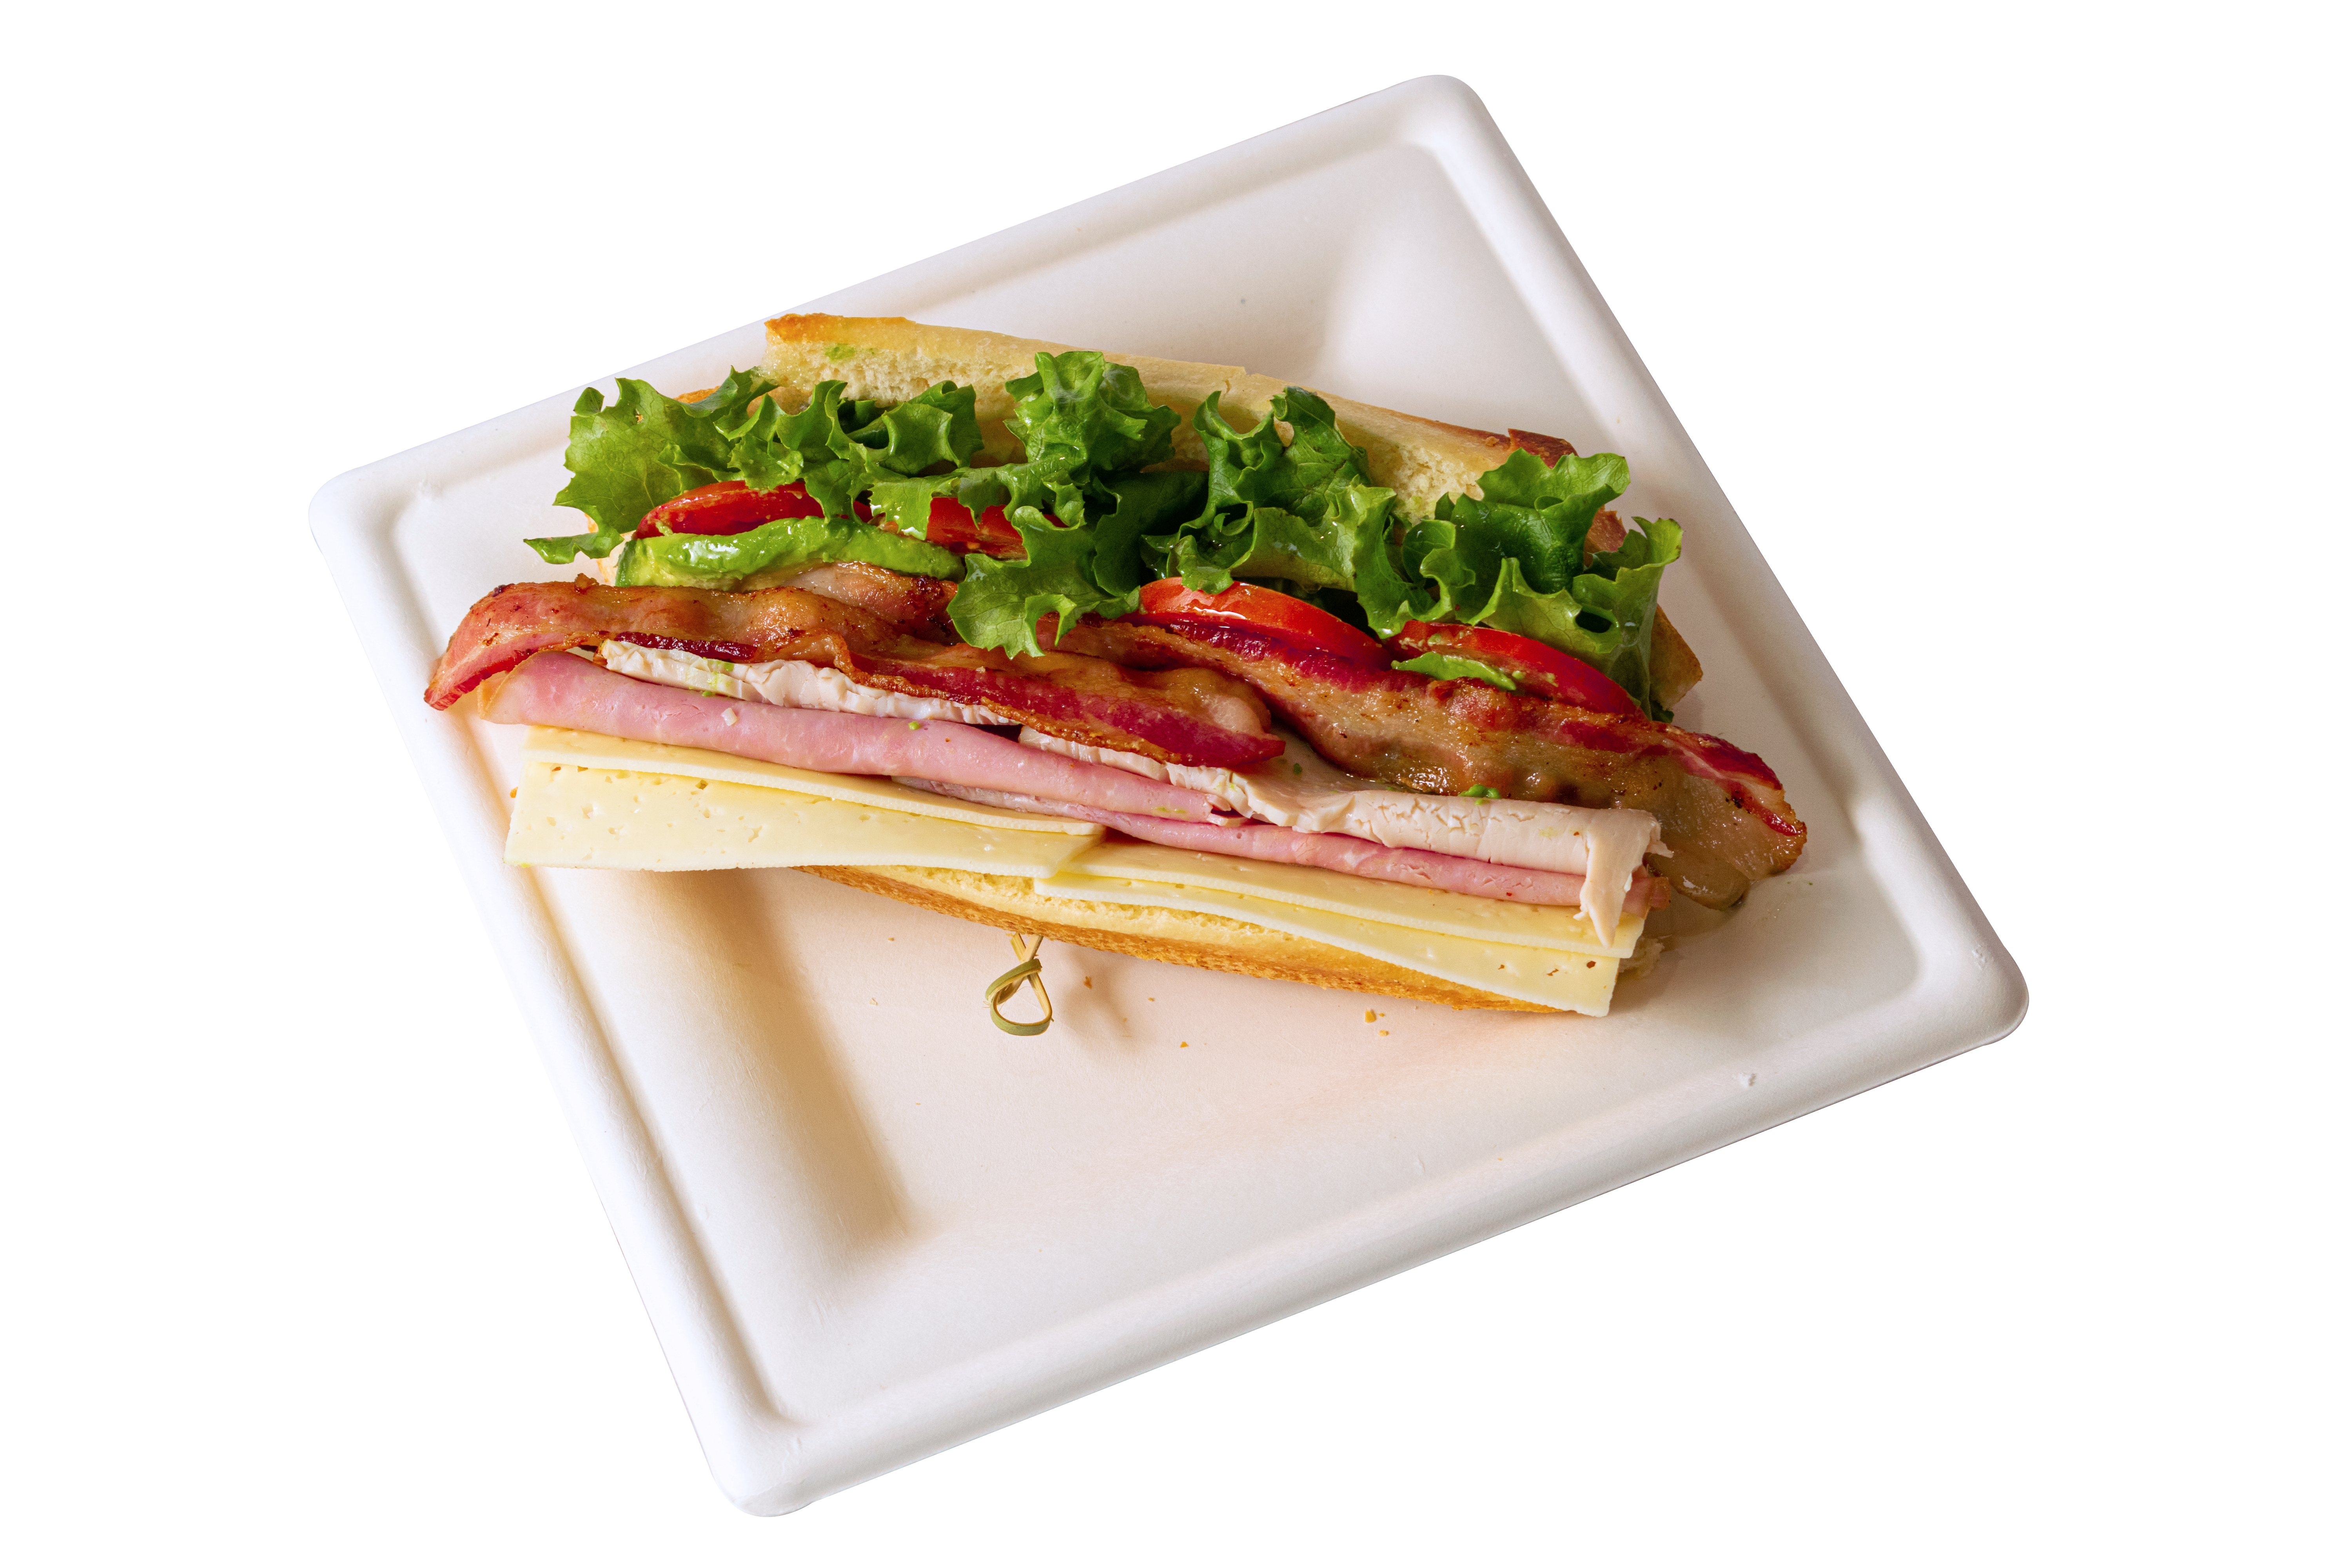 31 club sandwich dsc 0175